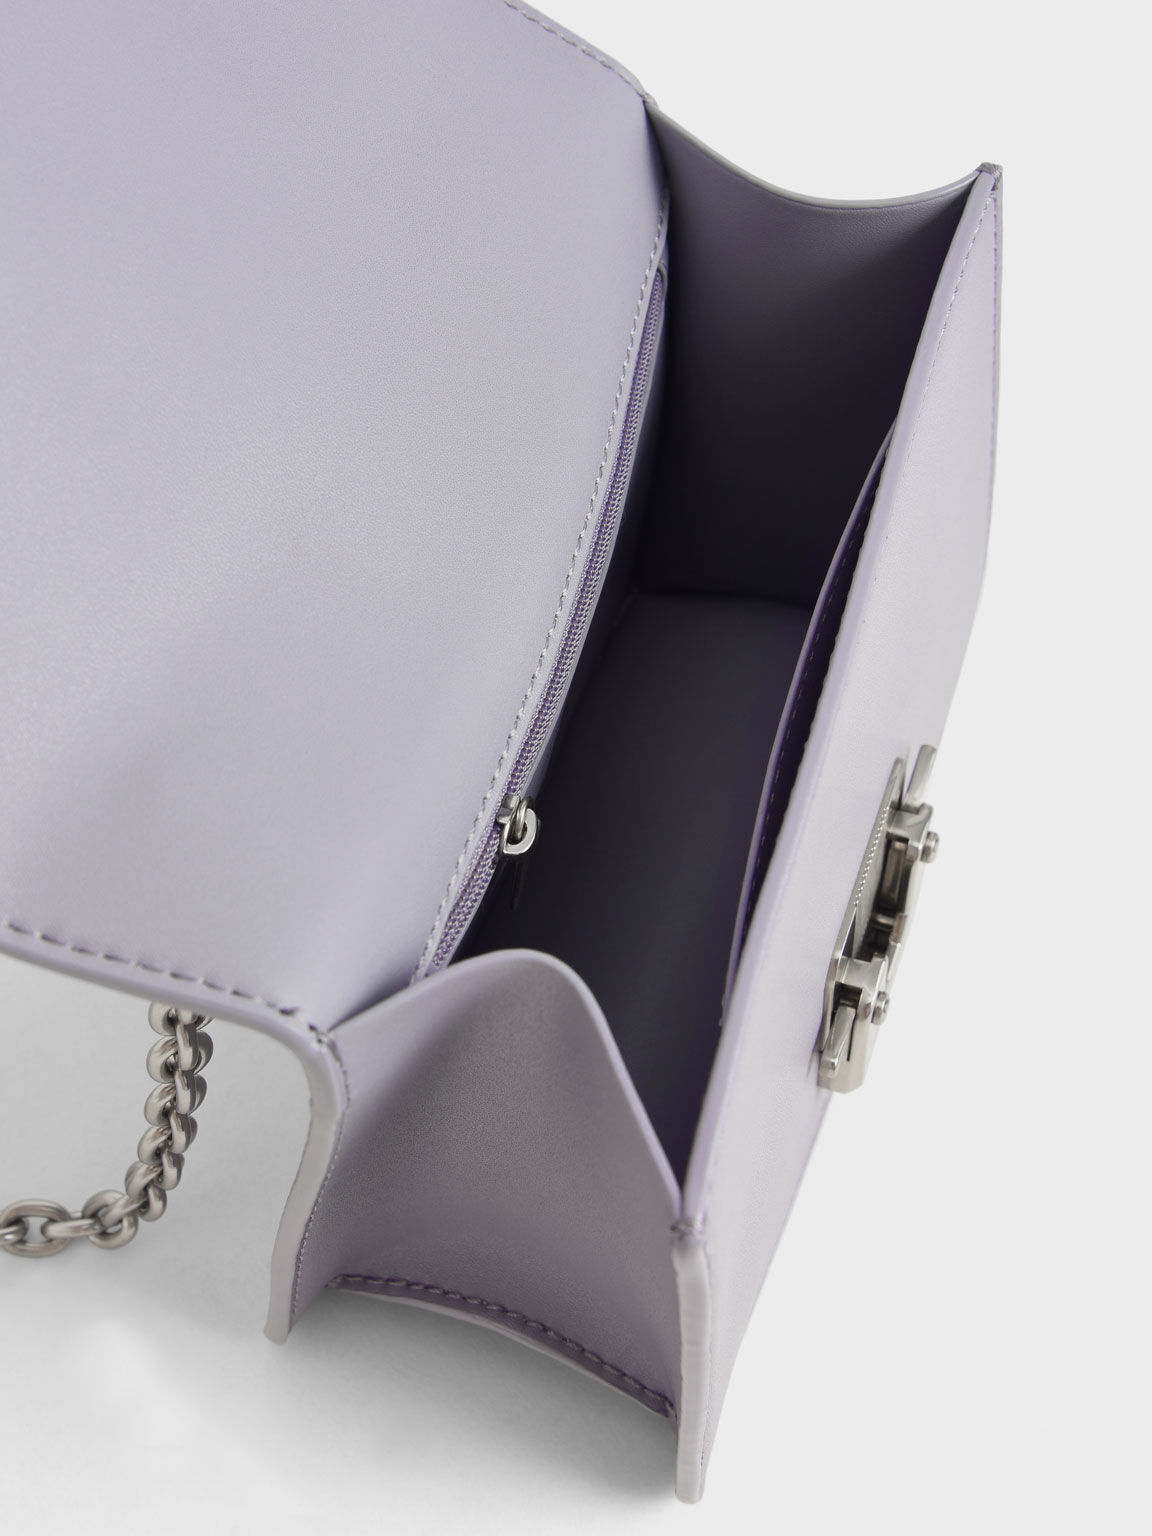 Push-Lock Shoulder Bag, Purple, hi-res